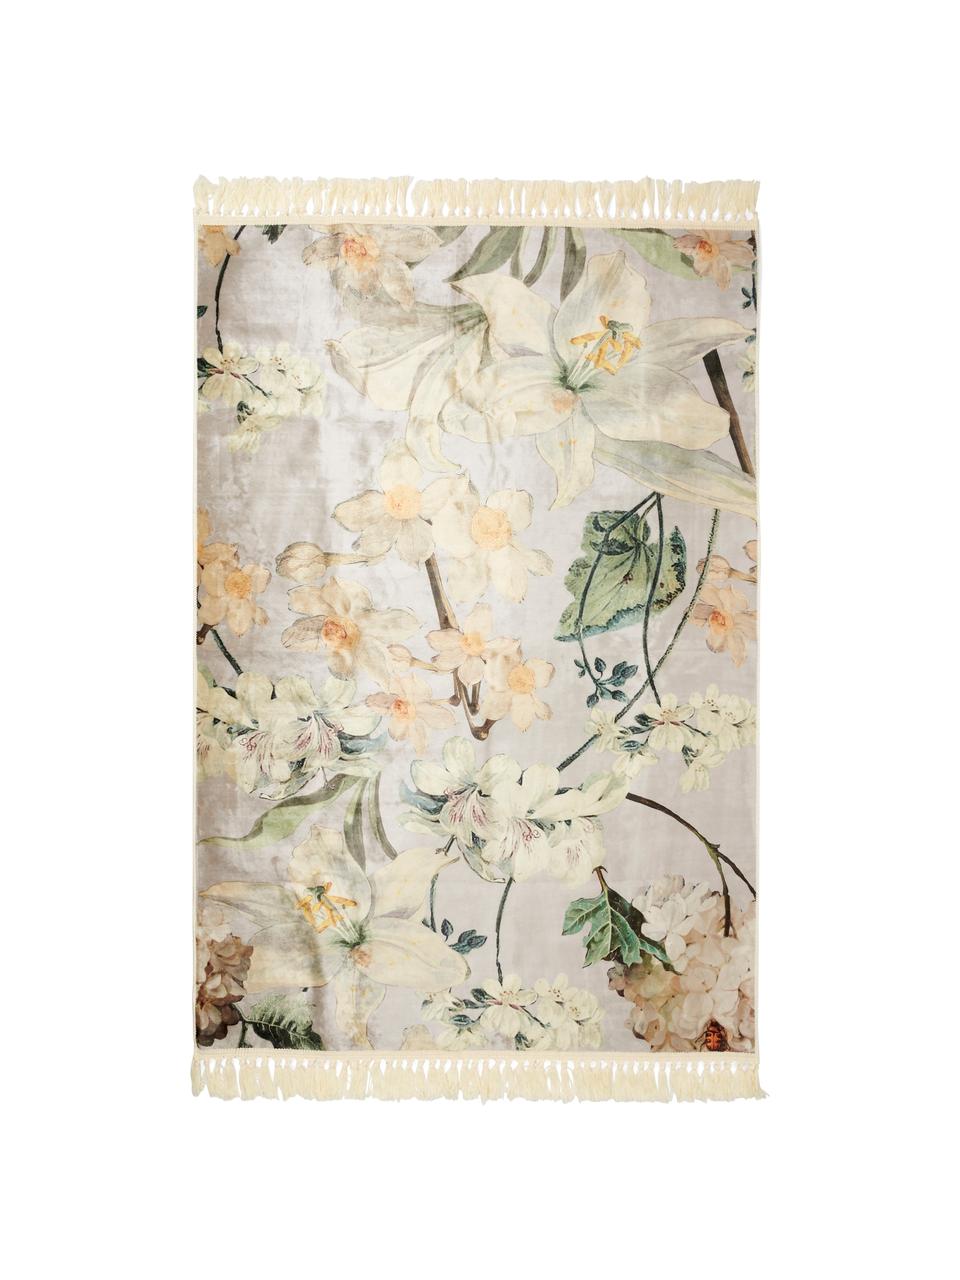 Teppich Rosalee mit Blumenmuster, 60% Polyester, 30% thermoplastisches Polyurethan, 10% Baumwolle, Hellgrau, Mehrfarbig, B 180 x L 240 cm (Grösse M)